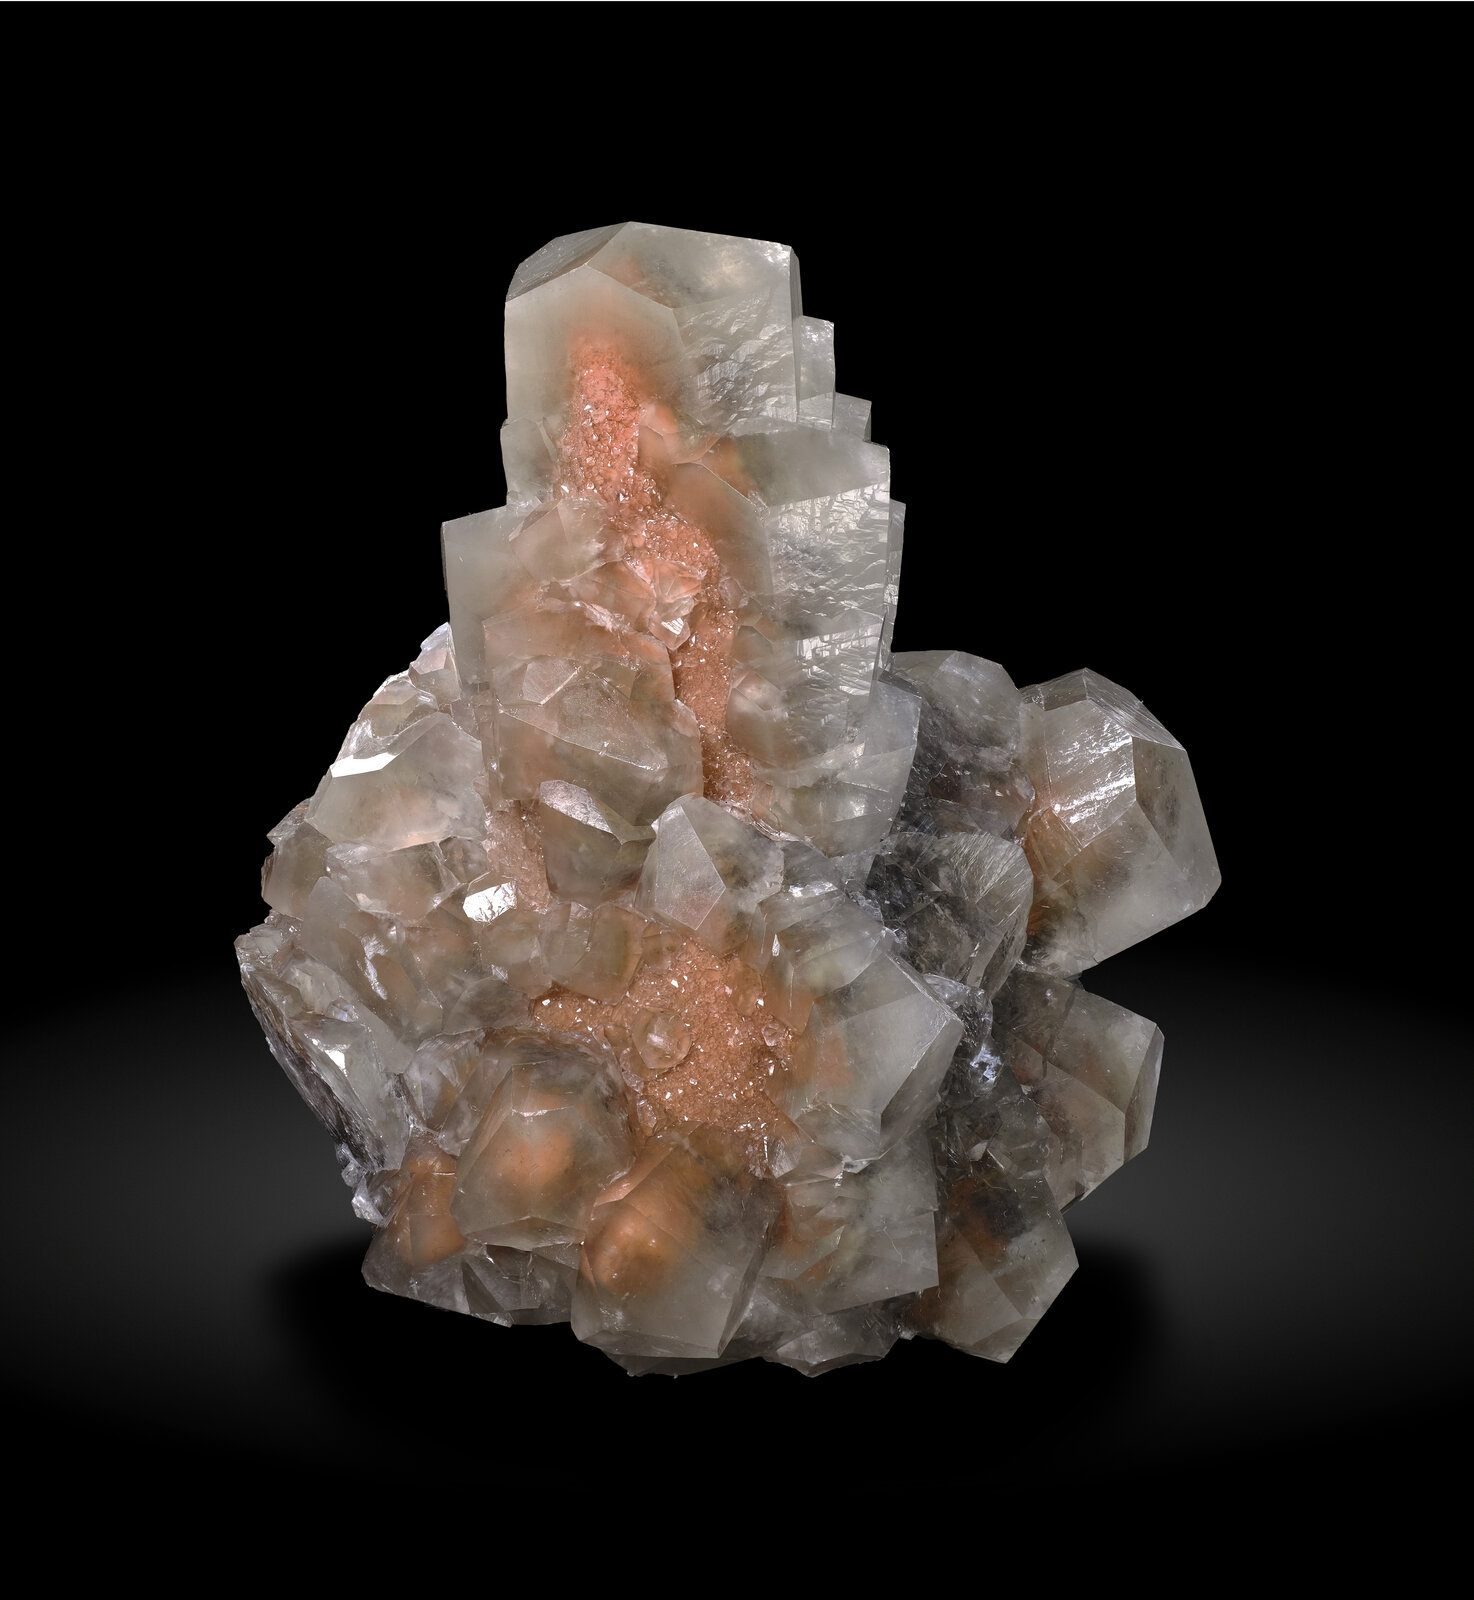 specimens/s_imagesAO5/Calcite-TFF67AO5-7665f.jpg